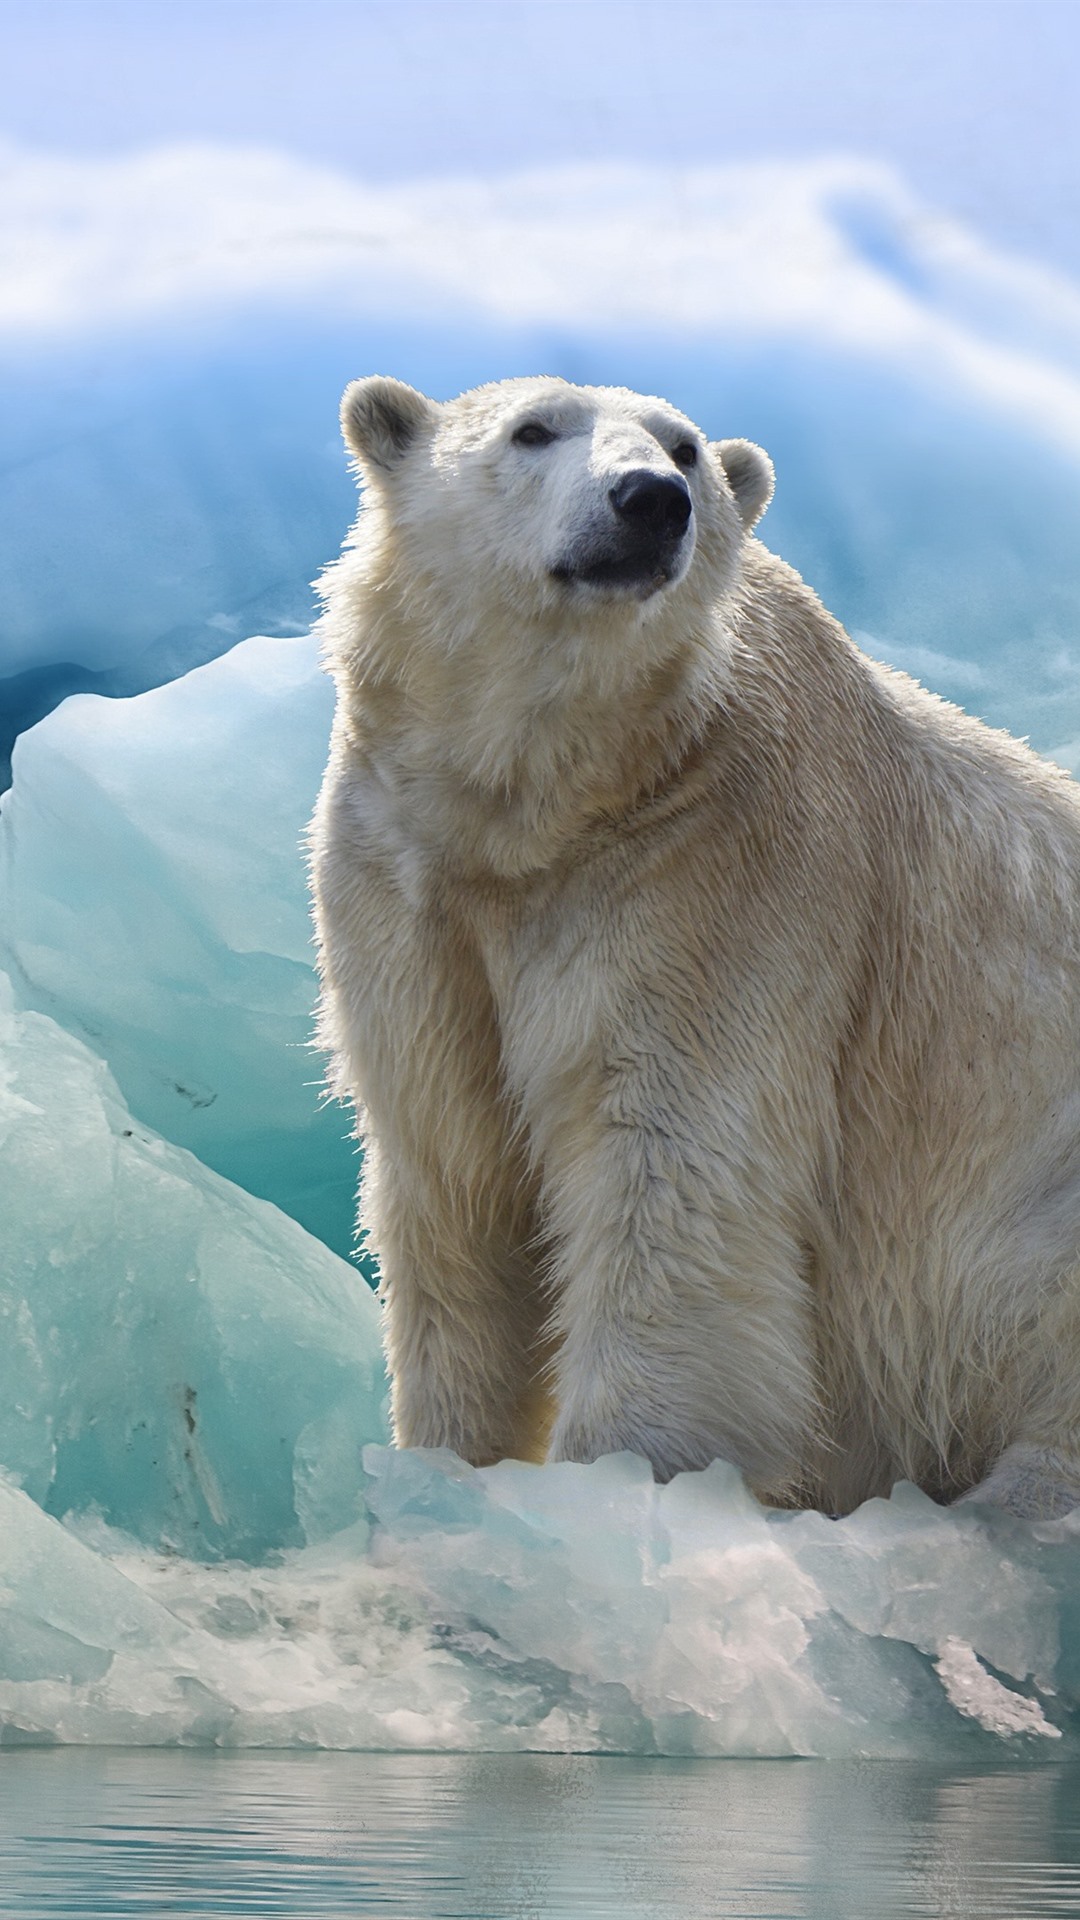 sfondi iphone orso polare,orso polare,orso,animale terrestre,orso polare,artico